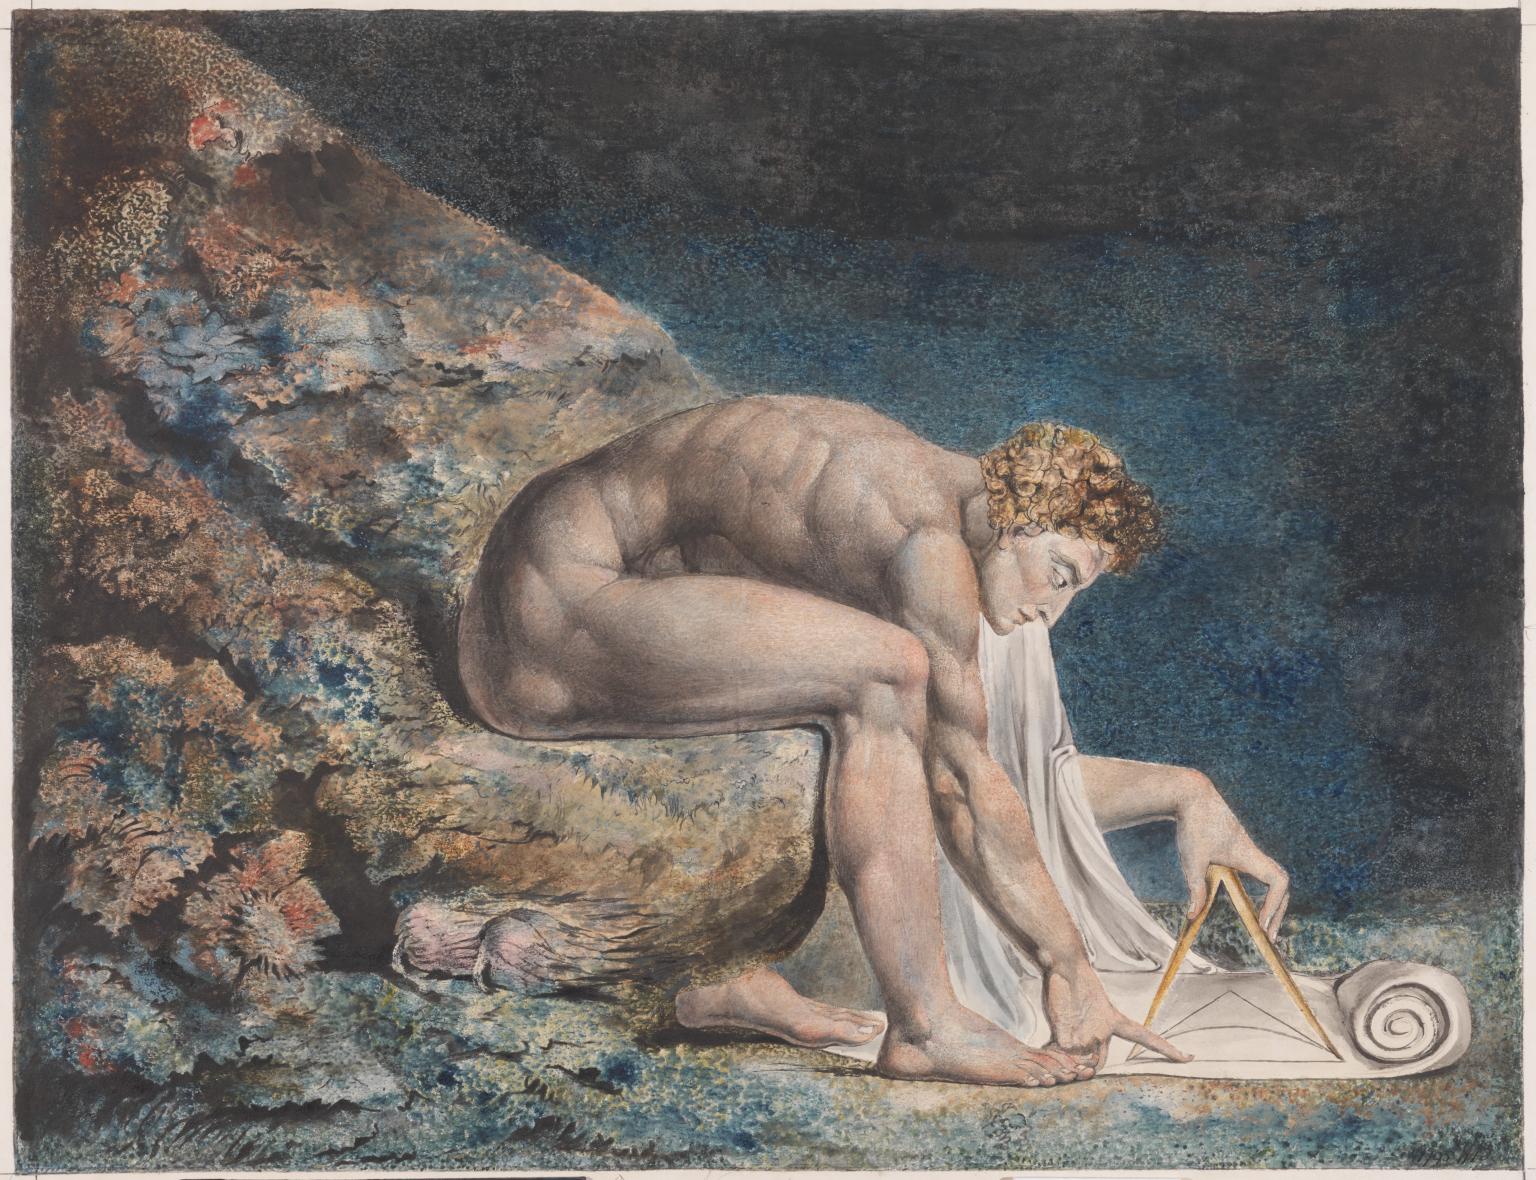 نيوتن by William Blake - بين حوالي 1795-1805 م - 60x46 سم 